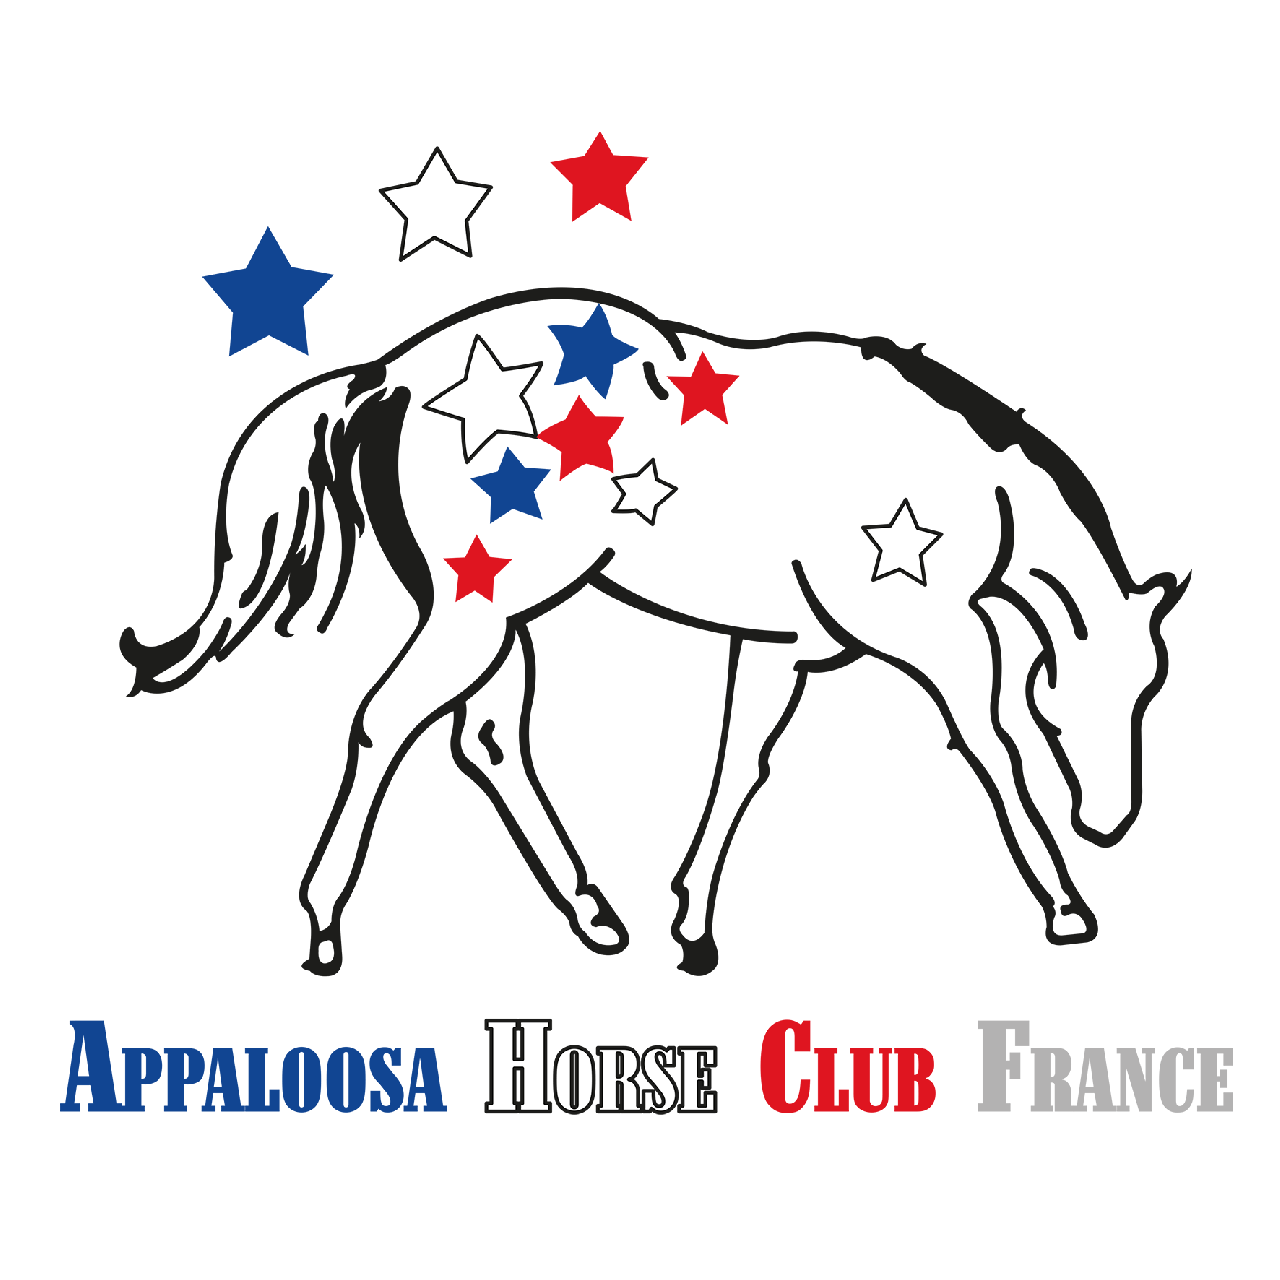 Appaloosa Horse Club France